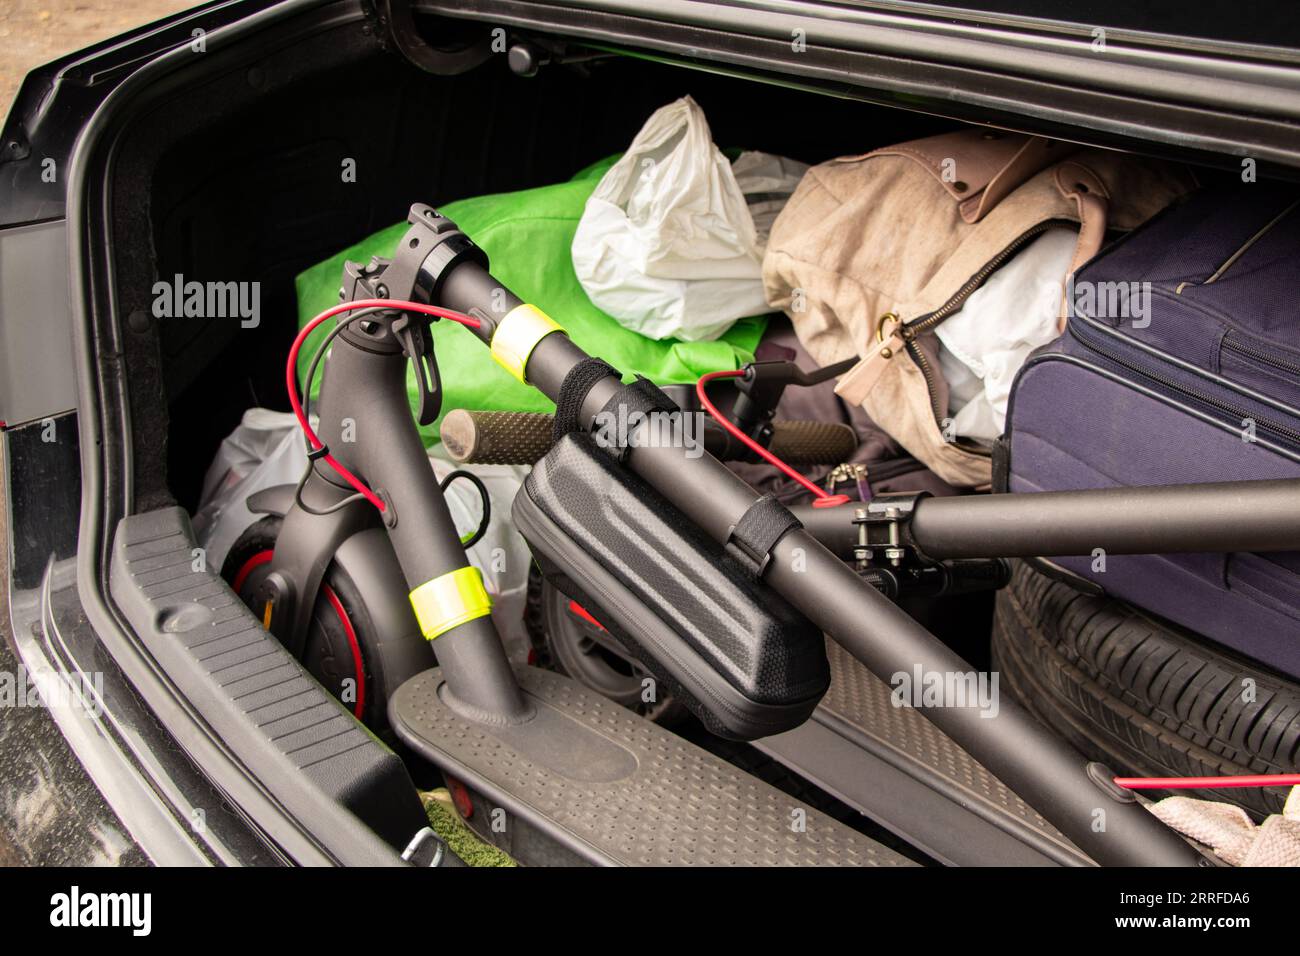 Zwei Elektroroller und Koffer mit Dingen befinden sich im Kofferraum eines Autos, das in der Ukraine Urlaub macht, Urlaub macht und mit dem Auto mit Rollern fährt Stockfoto